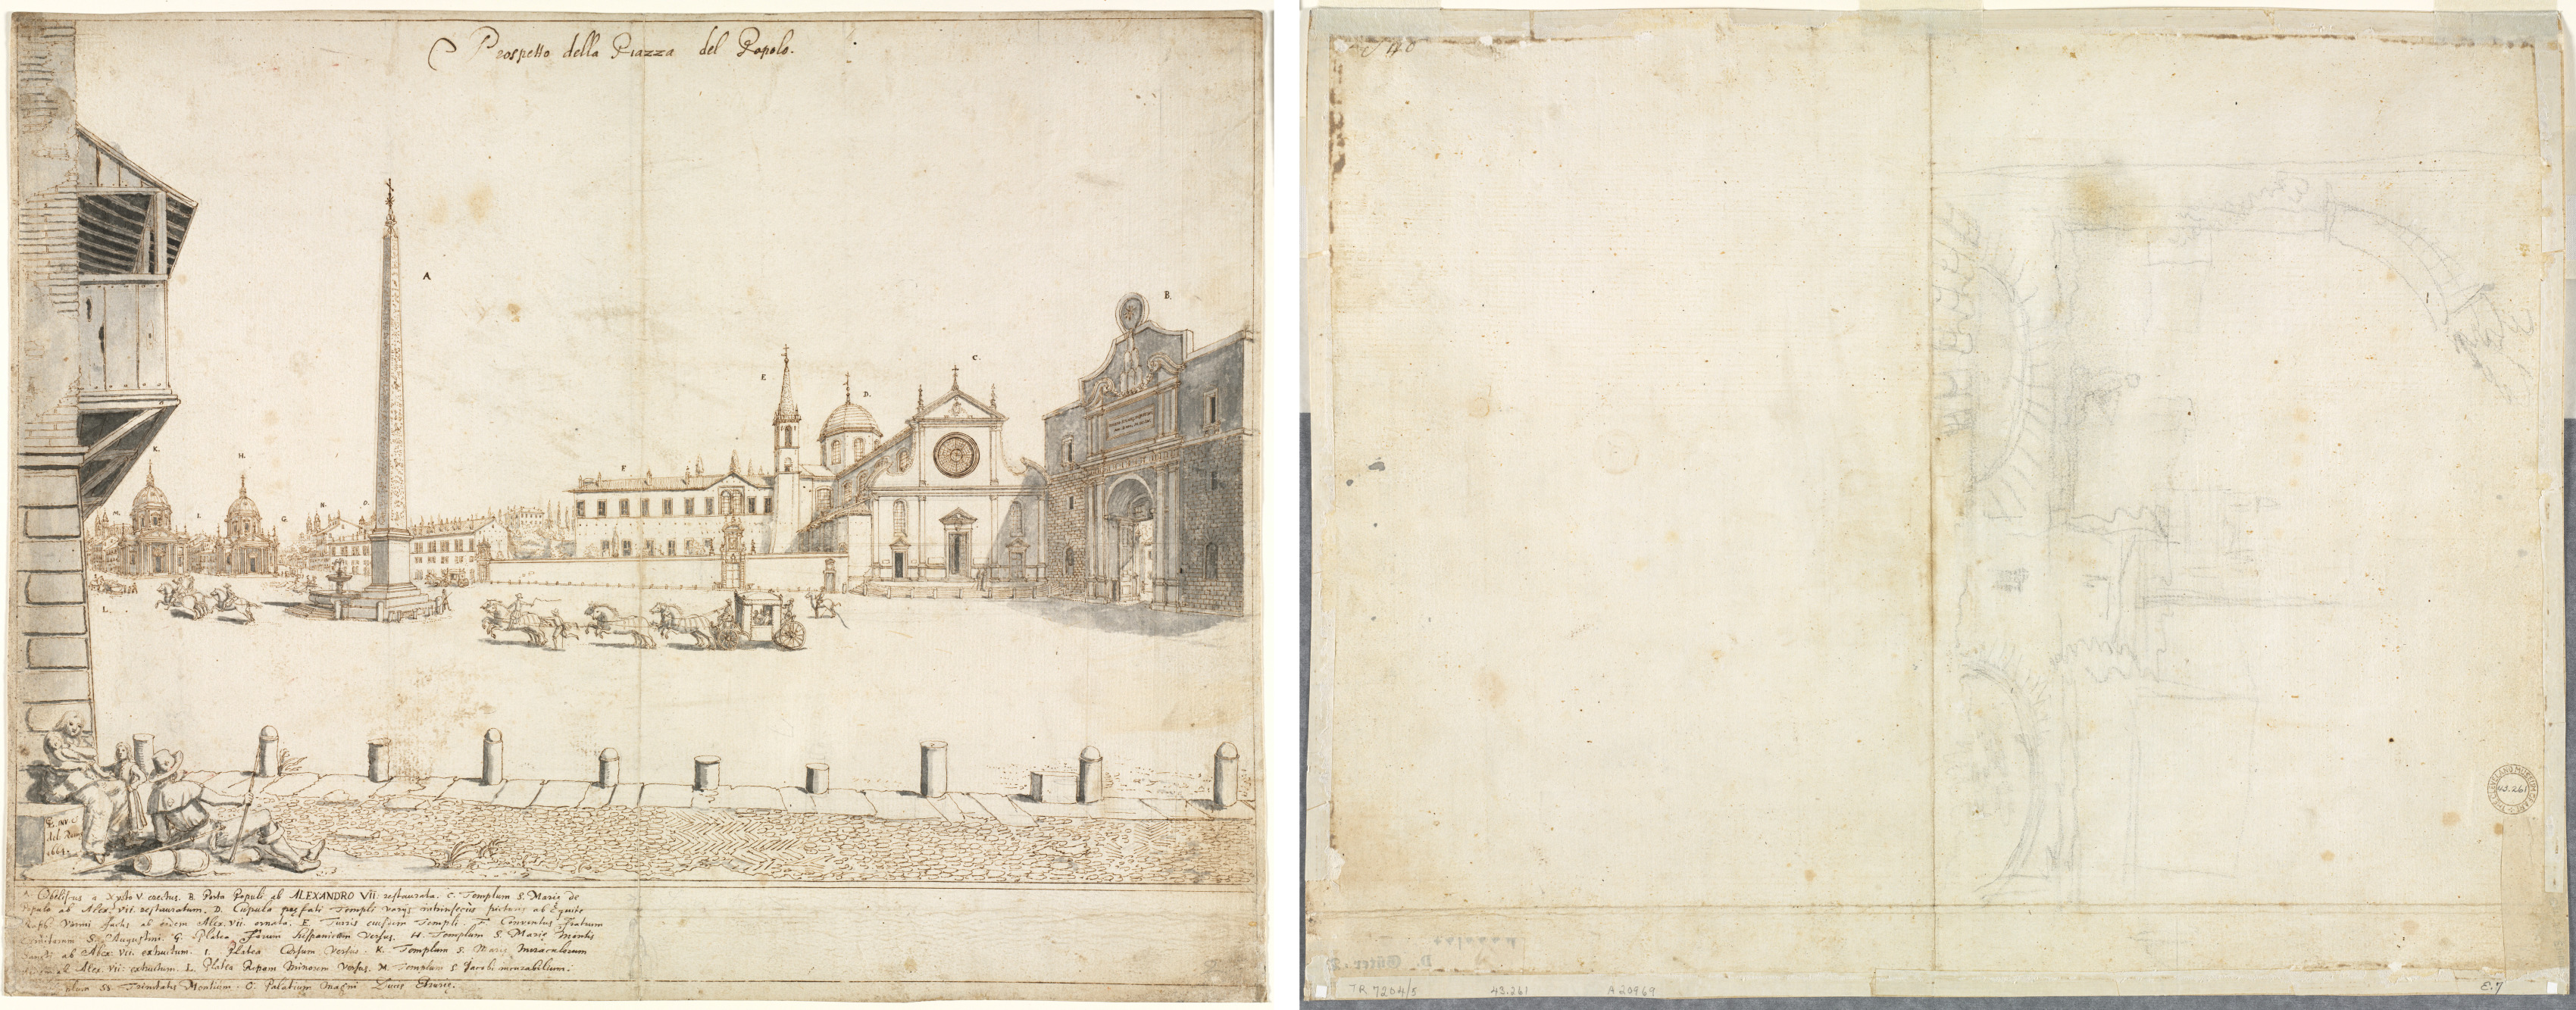 Eighteen Views of Rome: The Piazza del Popolo (recto); Sketch for San Giovanni in Laterano (verso)